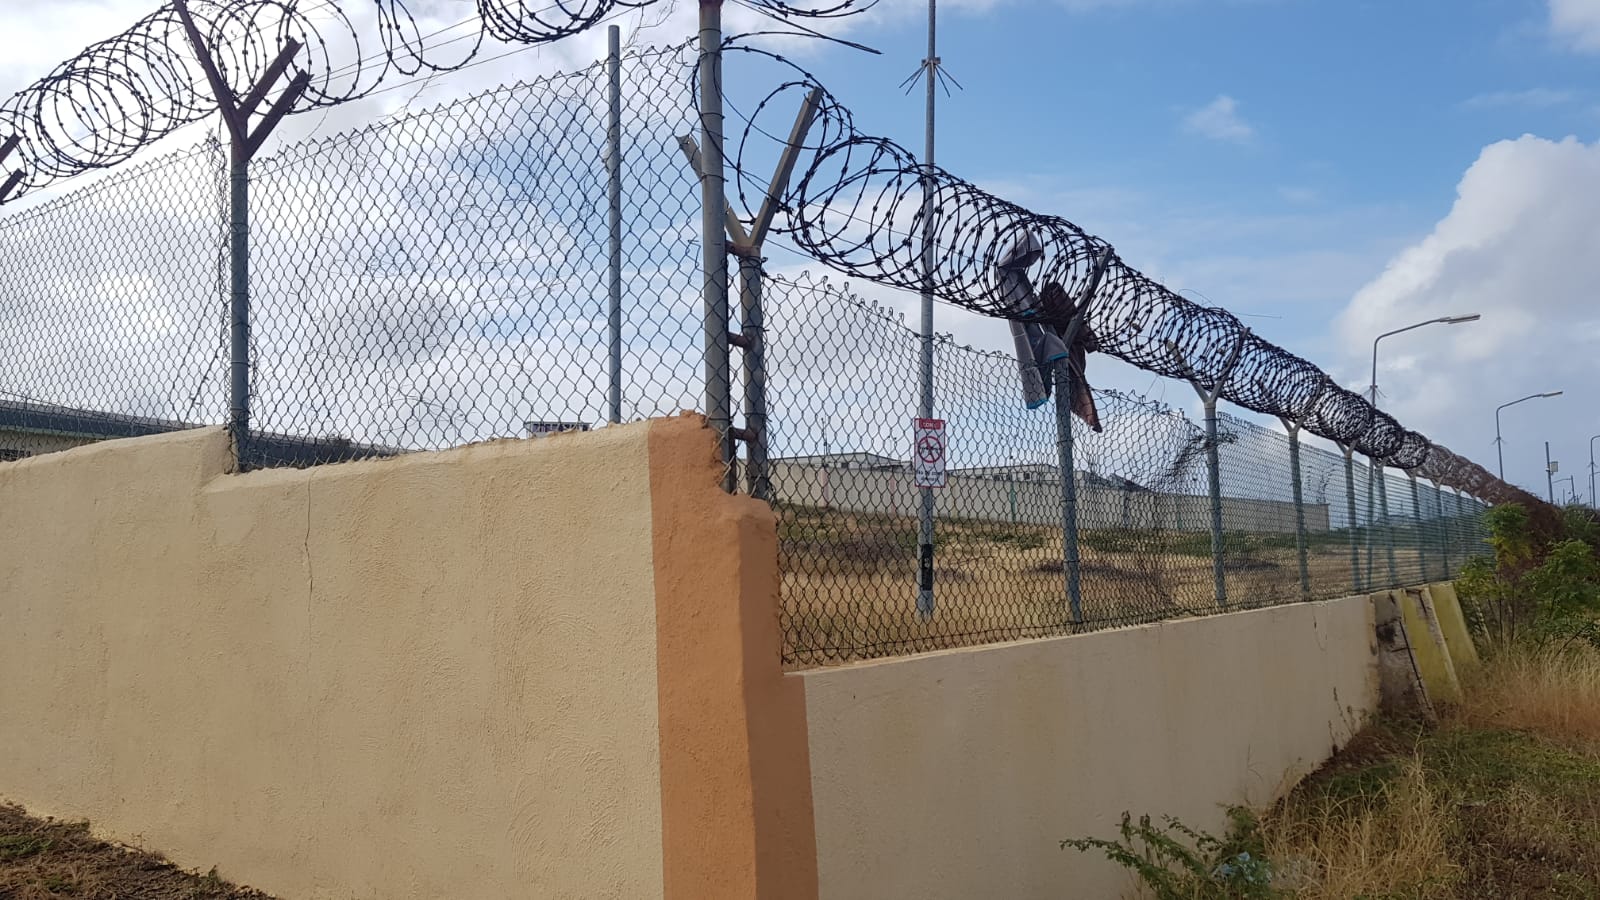 Siete venezolanos escapan de un centro de reclusión en Curazao para evitar ser deportados